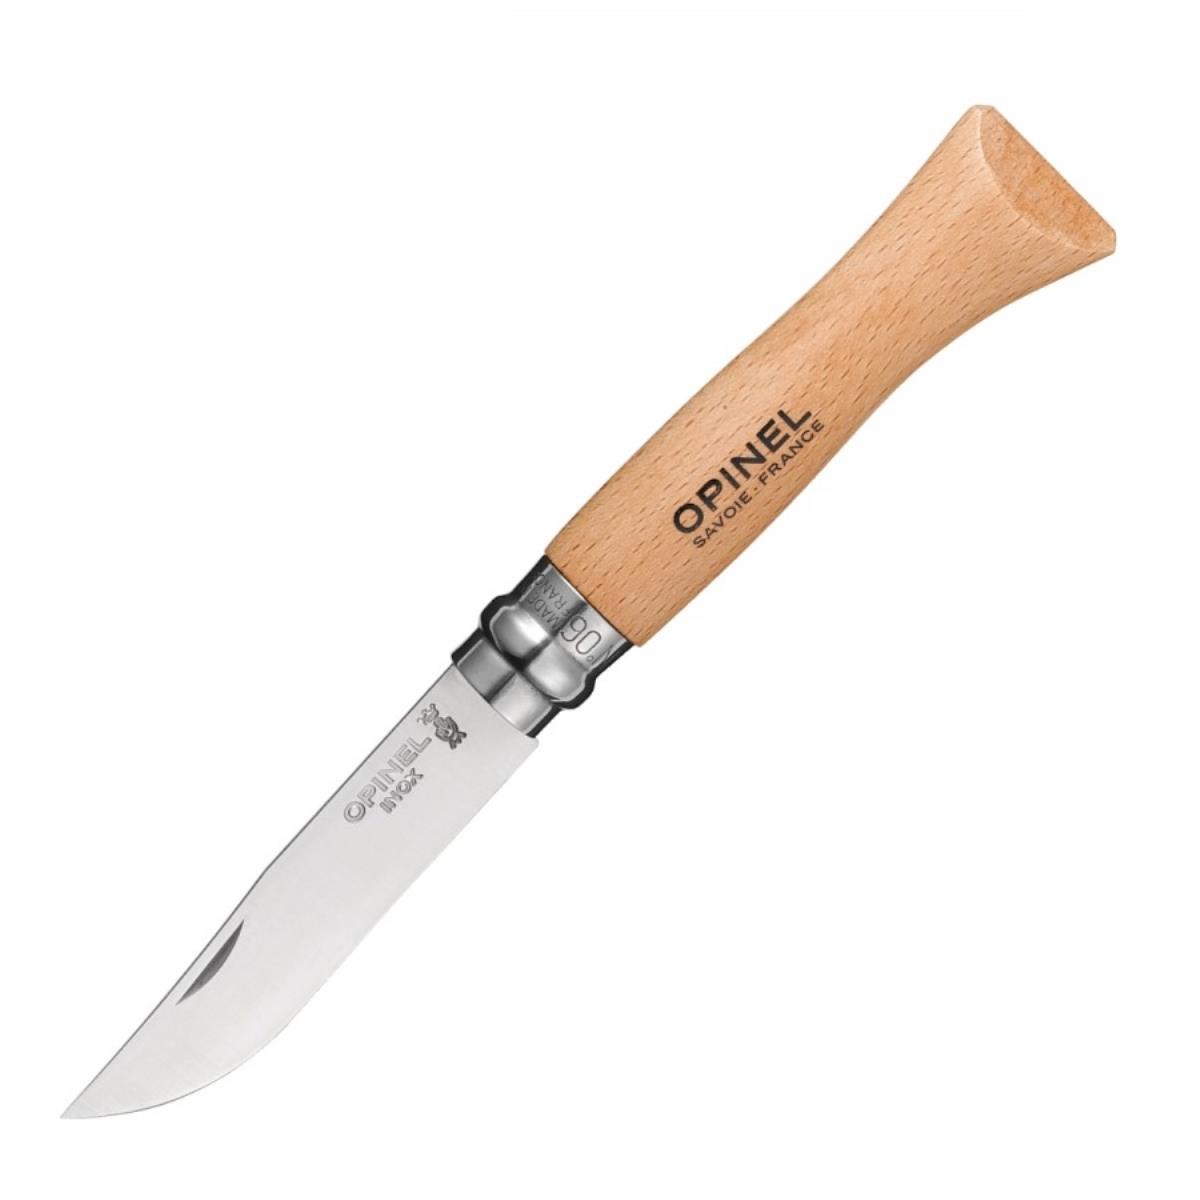 Нож №6 VRI Tradition Inox (нерж.сталь, рукоять бук, длина клинка 7 см) (1230607) OPINEL нож складной серая рукоять g10 сталь aus 8 bk01bo424 strike coyote boker